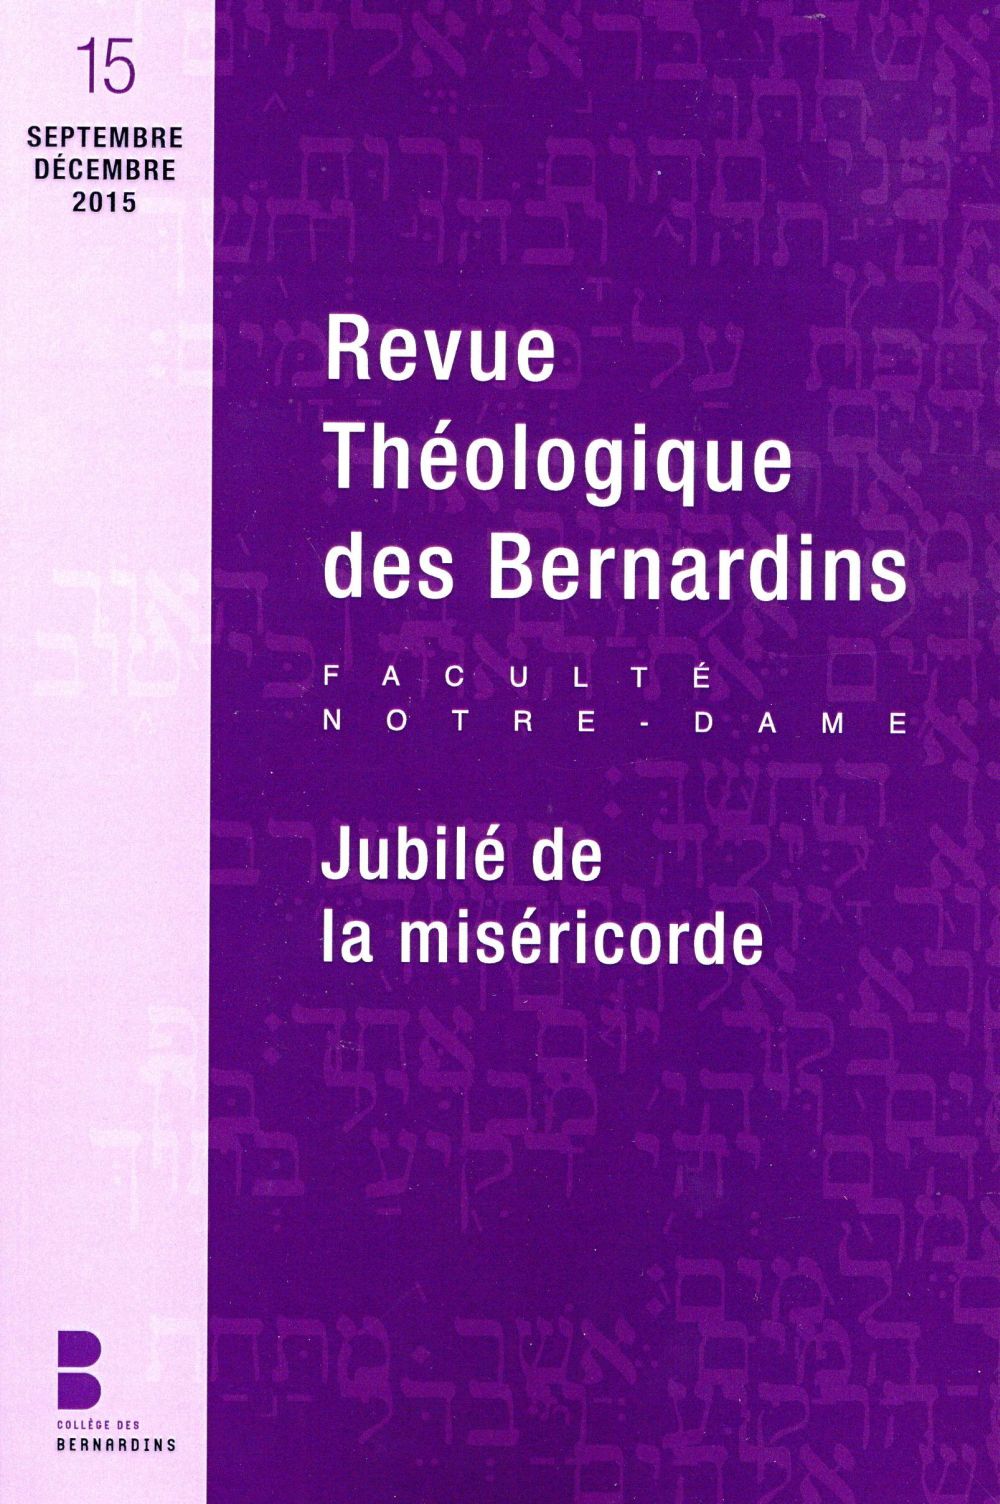 REVUE THEOLOGIQUE DES BERNARDINS JUBILE DE LA MISERICORDE 15